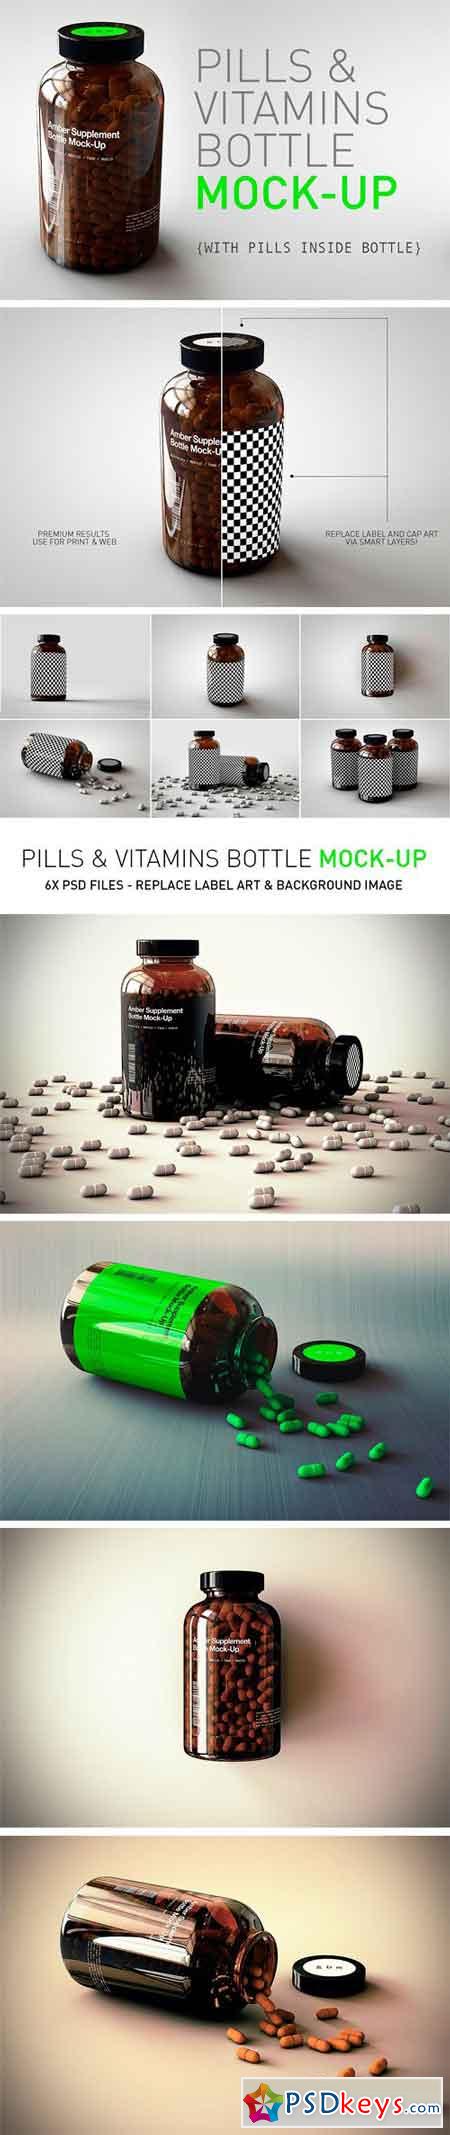 Pill Bottle Vitamin Bottle Mock-Up 1661078